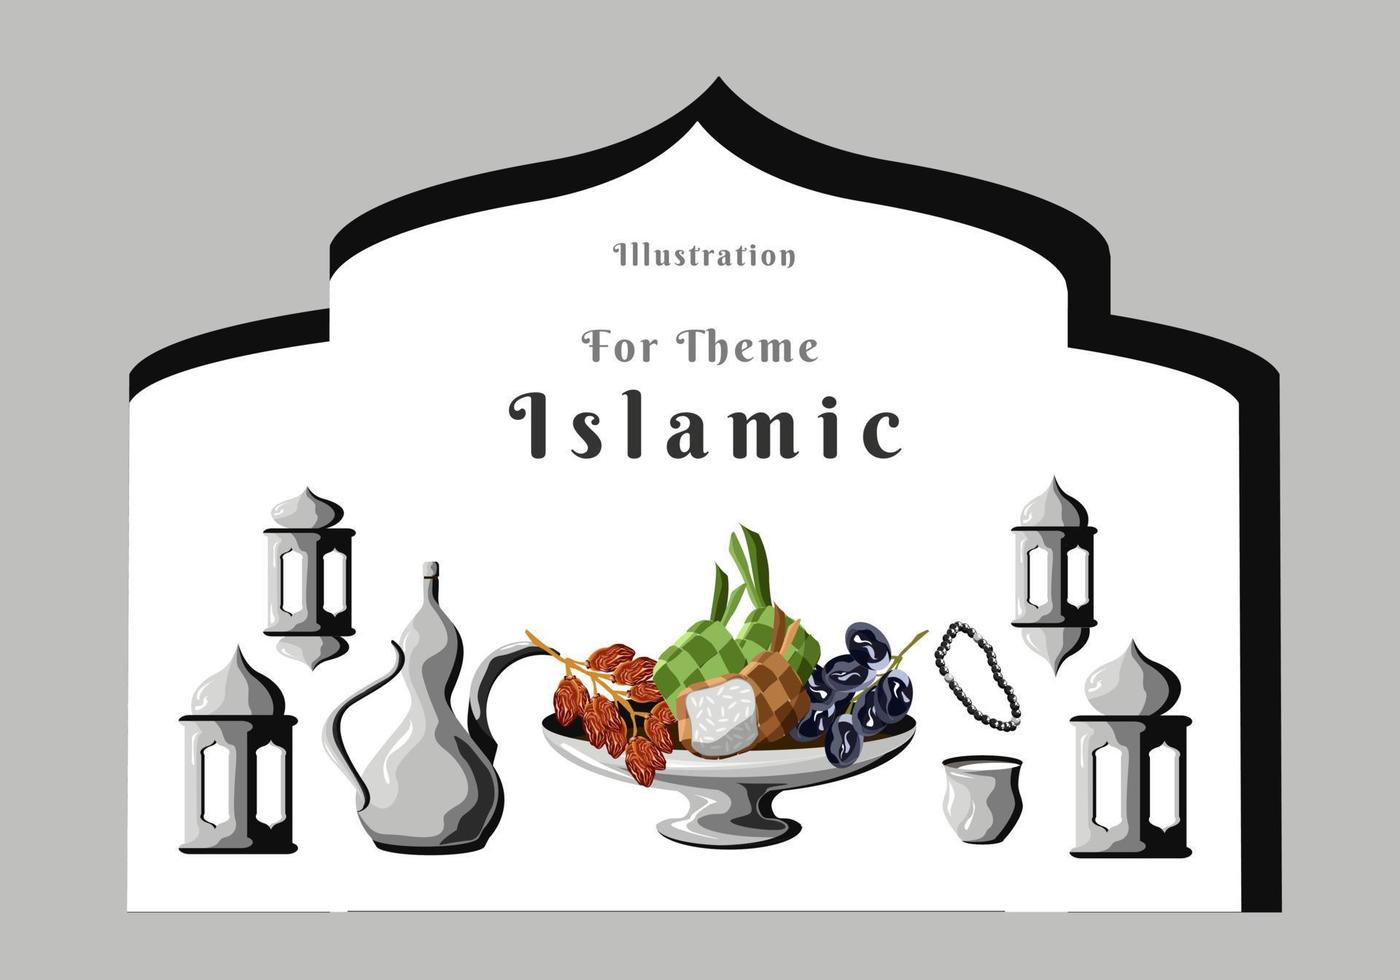 illustration för temat islamisk clipart vektor